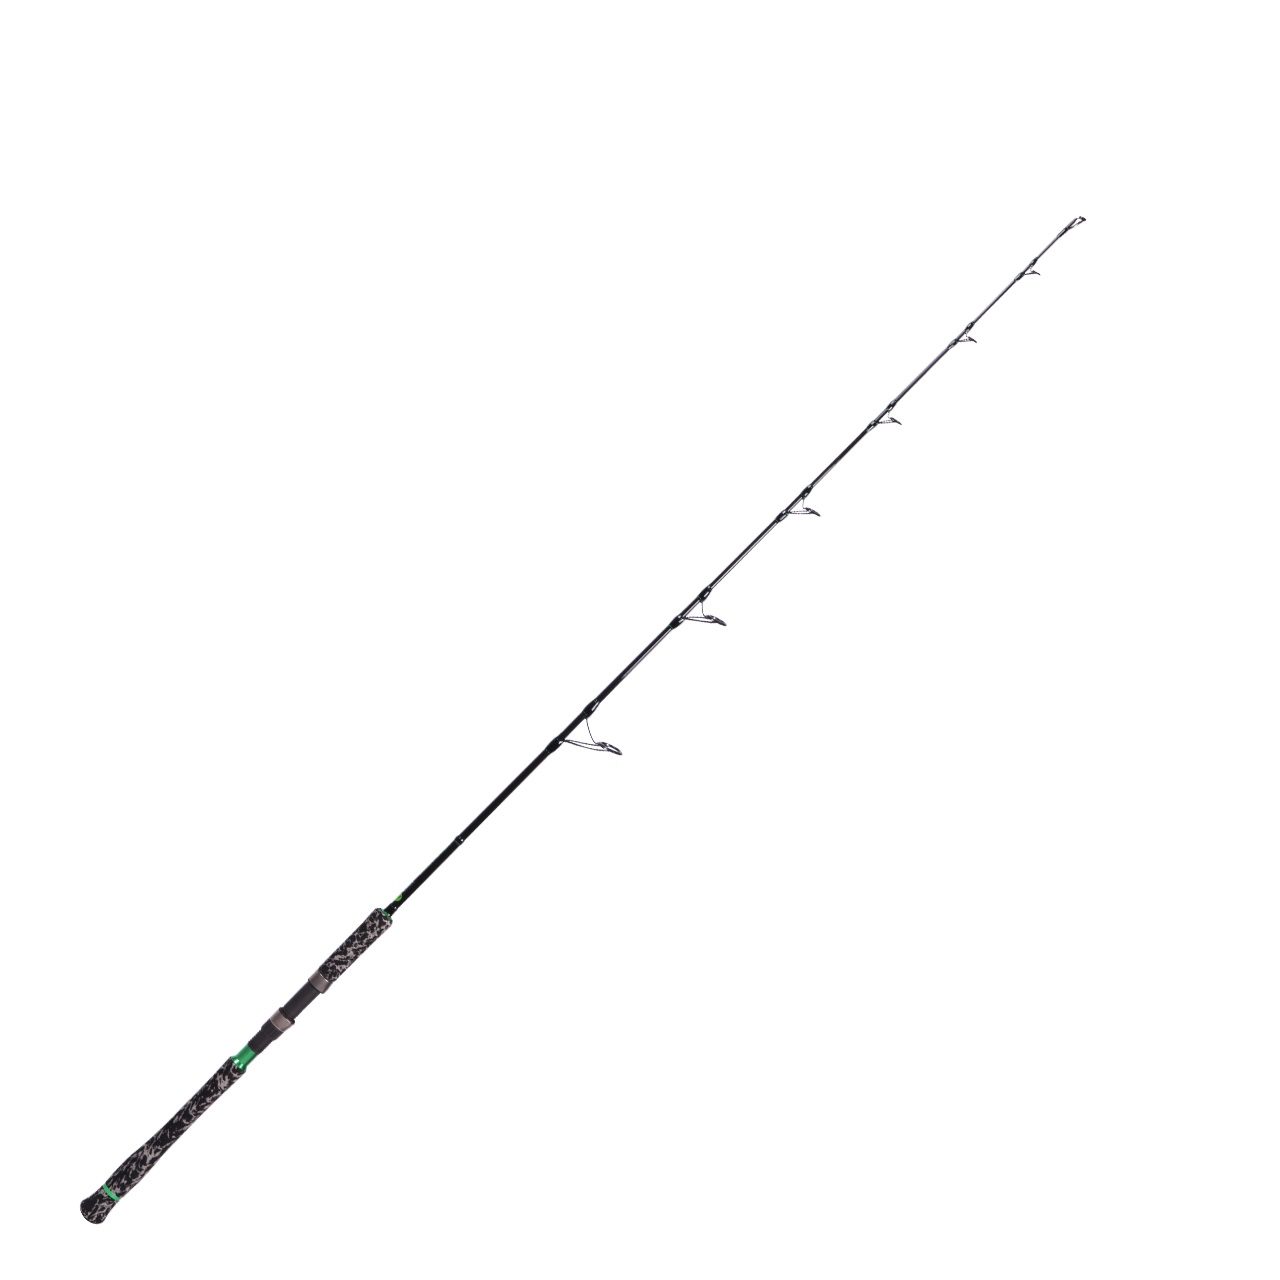 Zeck Fishing 2018 Belly Stick Vertikal Rute 165 cm Welsrute Wallerrute Cat Wels 